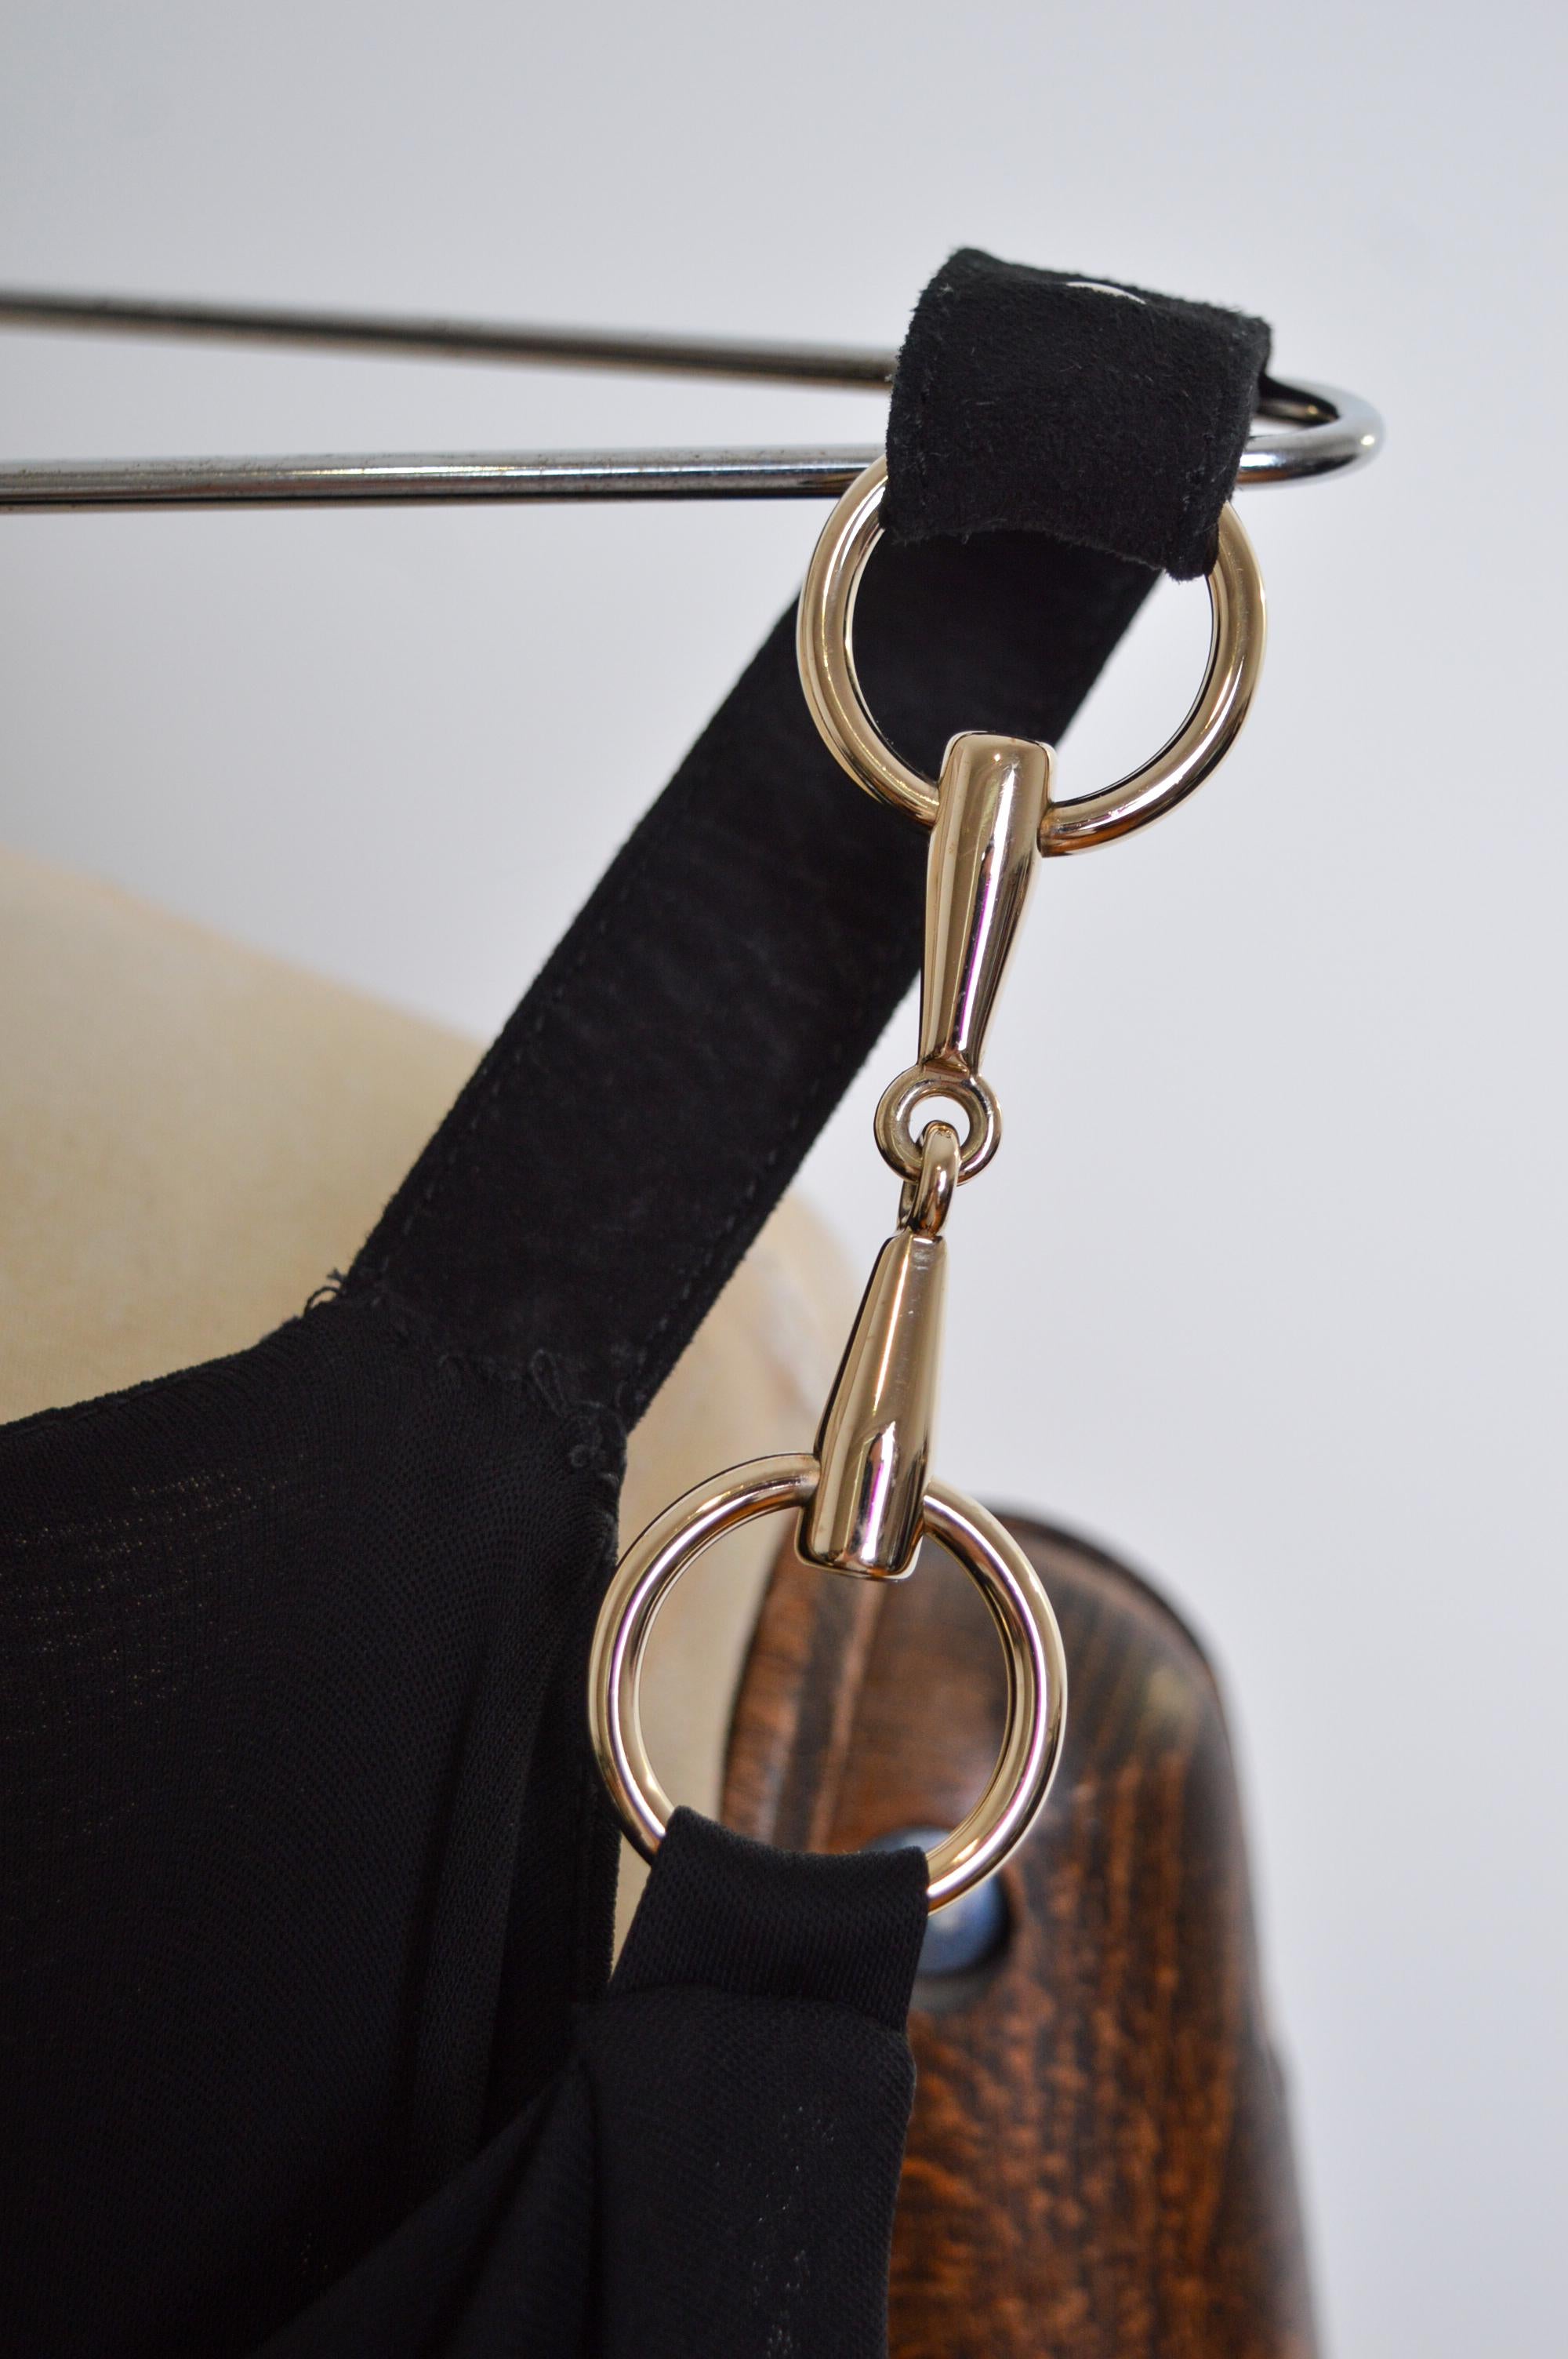 Magnifique mini robe Vintage GUCCI d'époque Tom Ford avec détails chromés et mors de cheval.   

FABRIQUÉ EN ITALIE.   

Le détail de l'épaule peut être porté sur l'épaule ou affalé le long du haut du bras.

Les mesures sont indiquées en pouces :
De